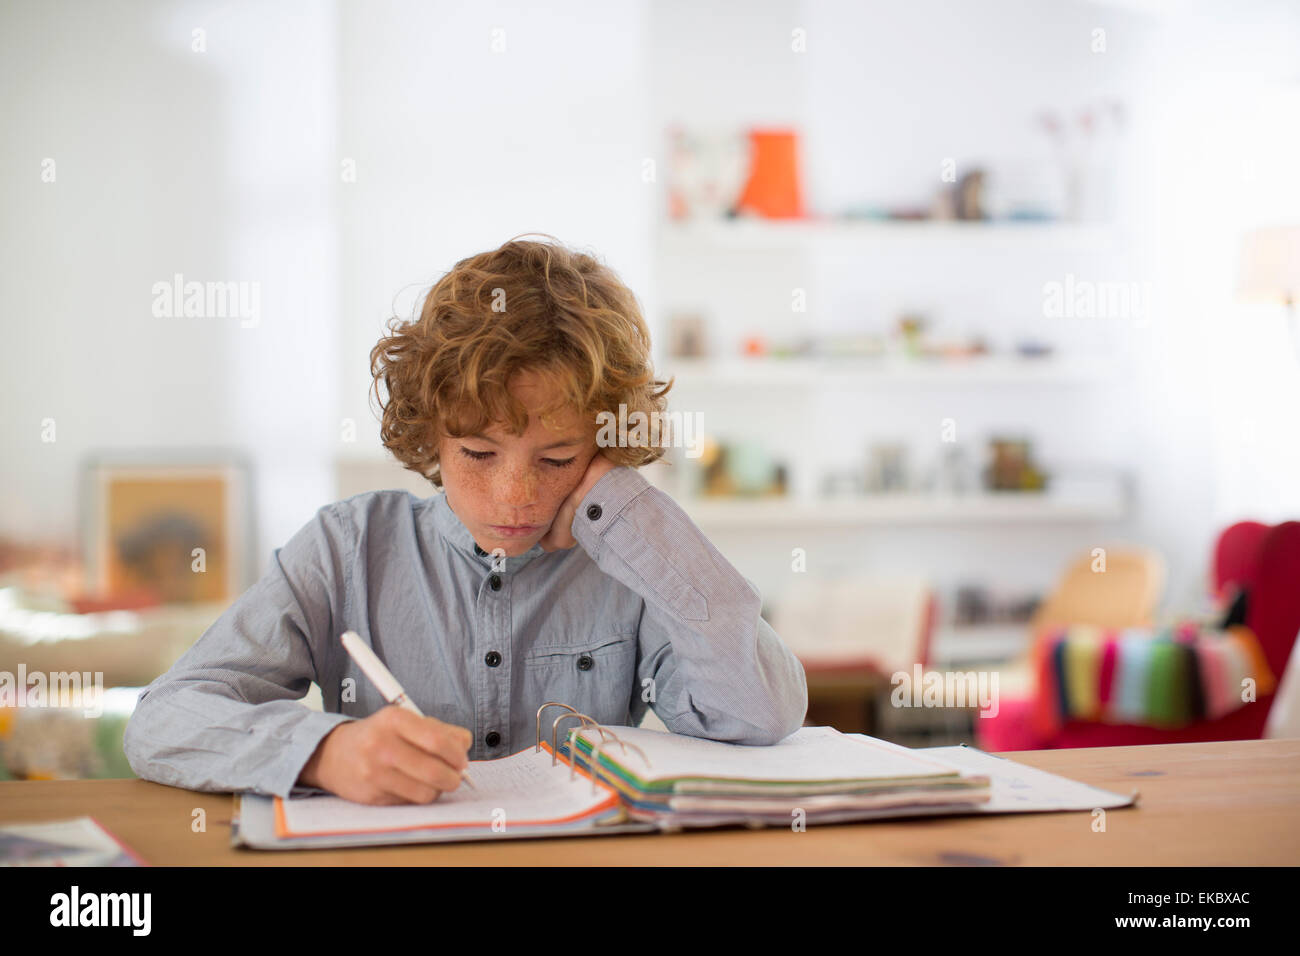 Adolescente estudiando y escribiendo notas Foto de stock